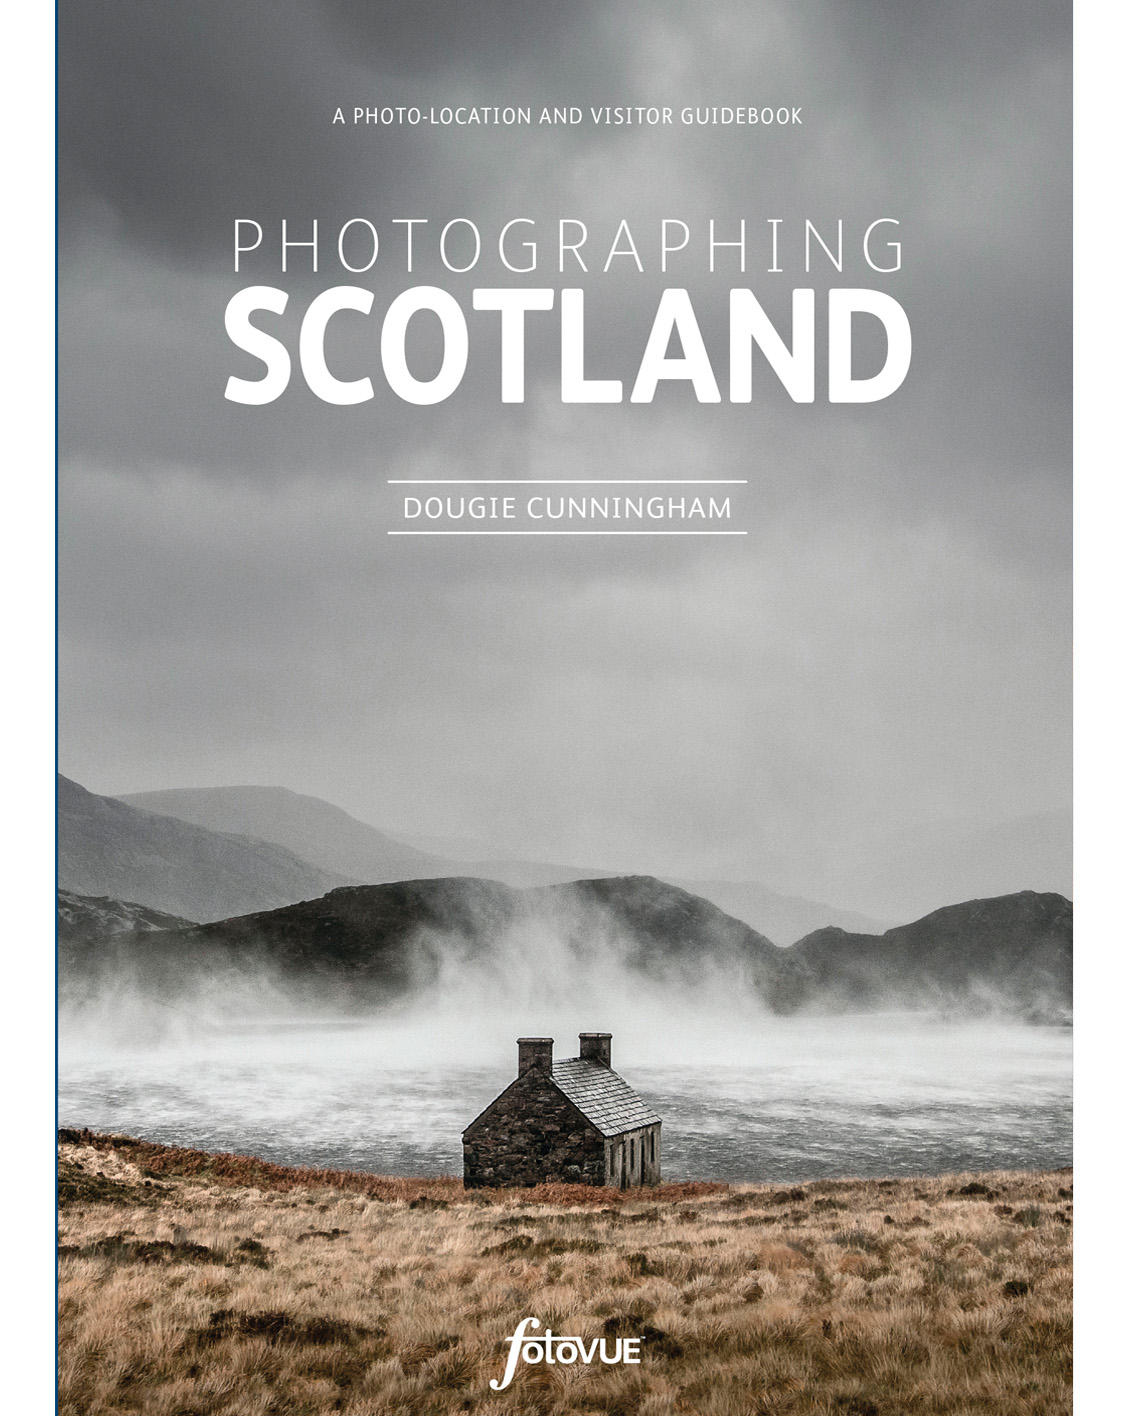 Online bestellen: Reisfotografiegids Photographing Scotland | Fotovue